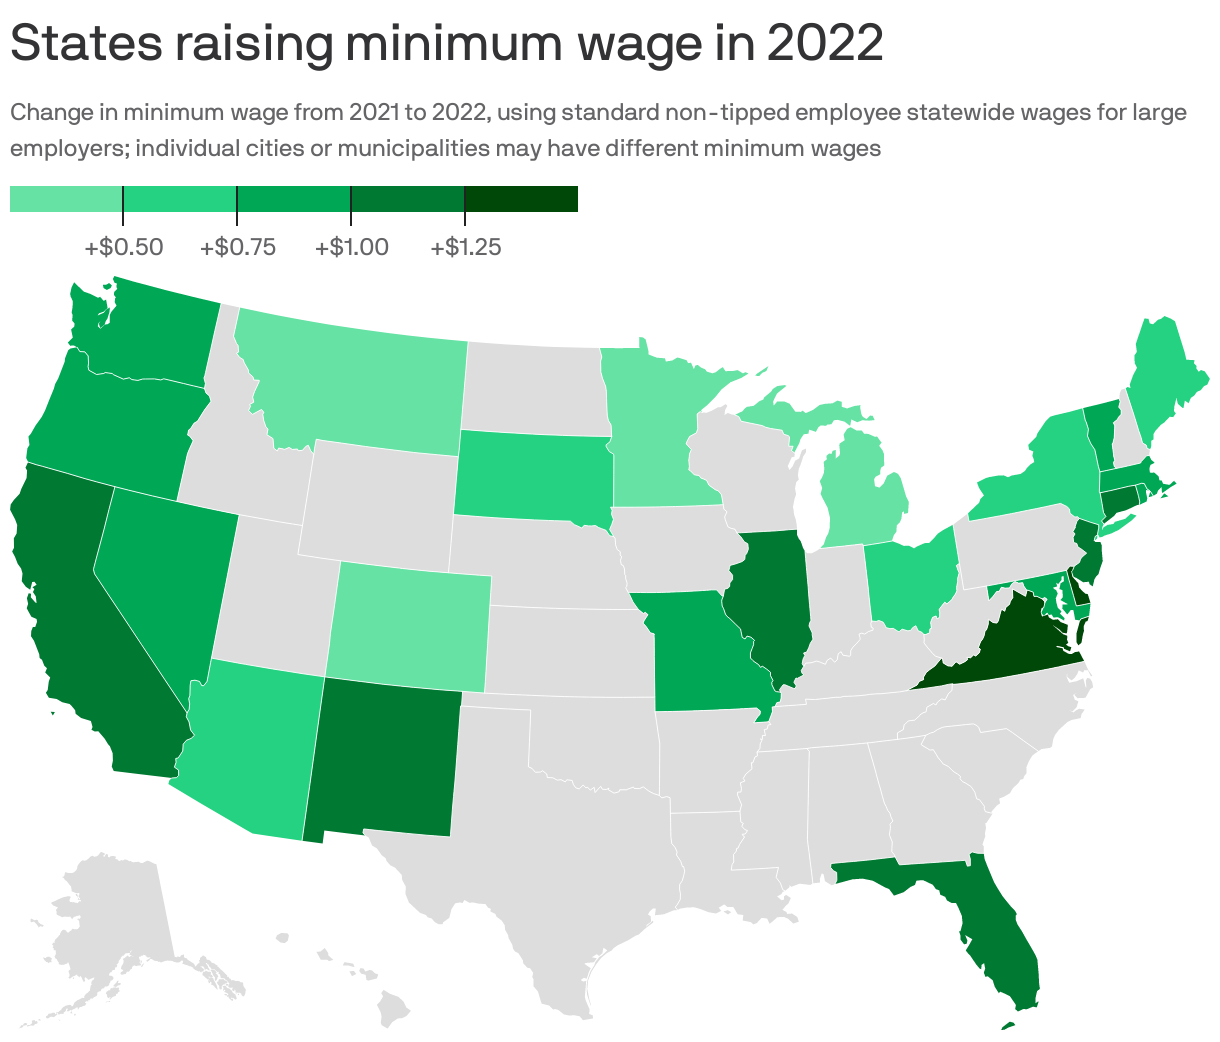 States raising minimum wage in 2022